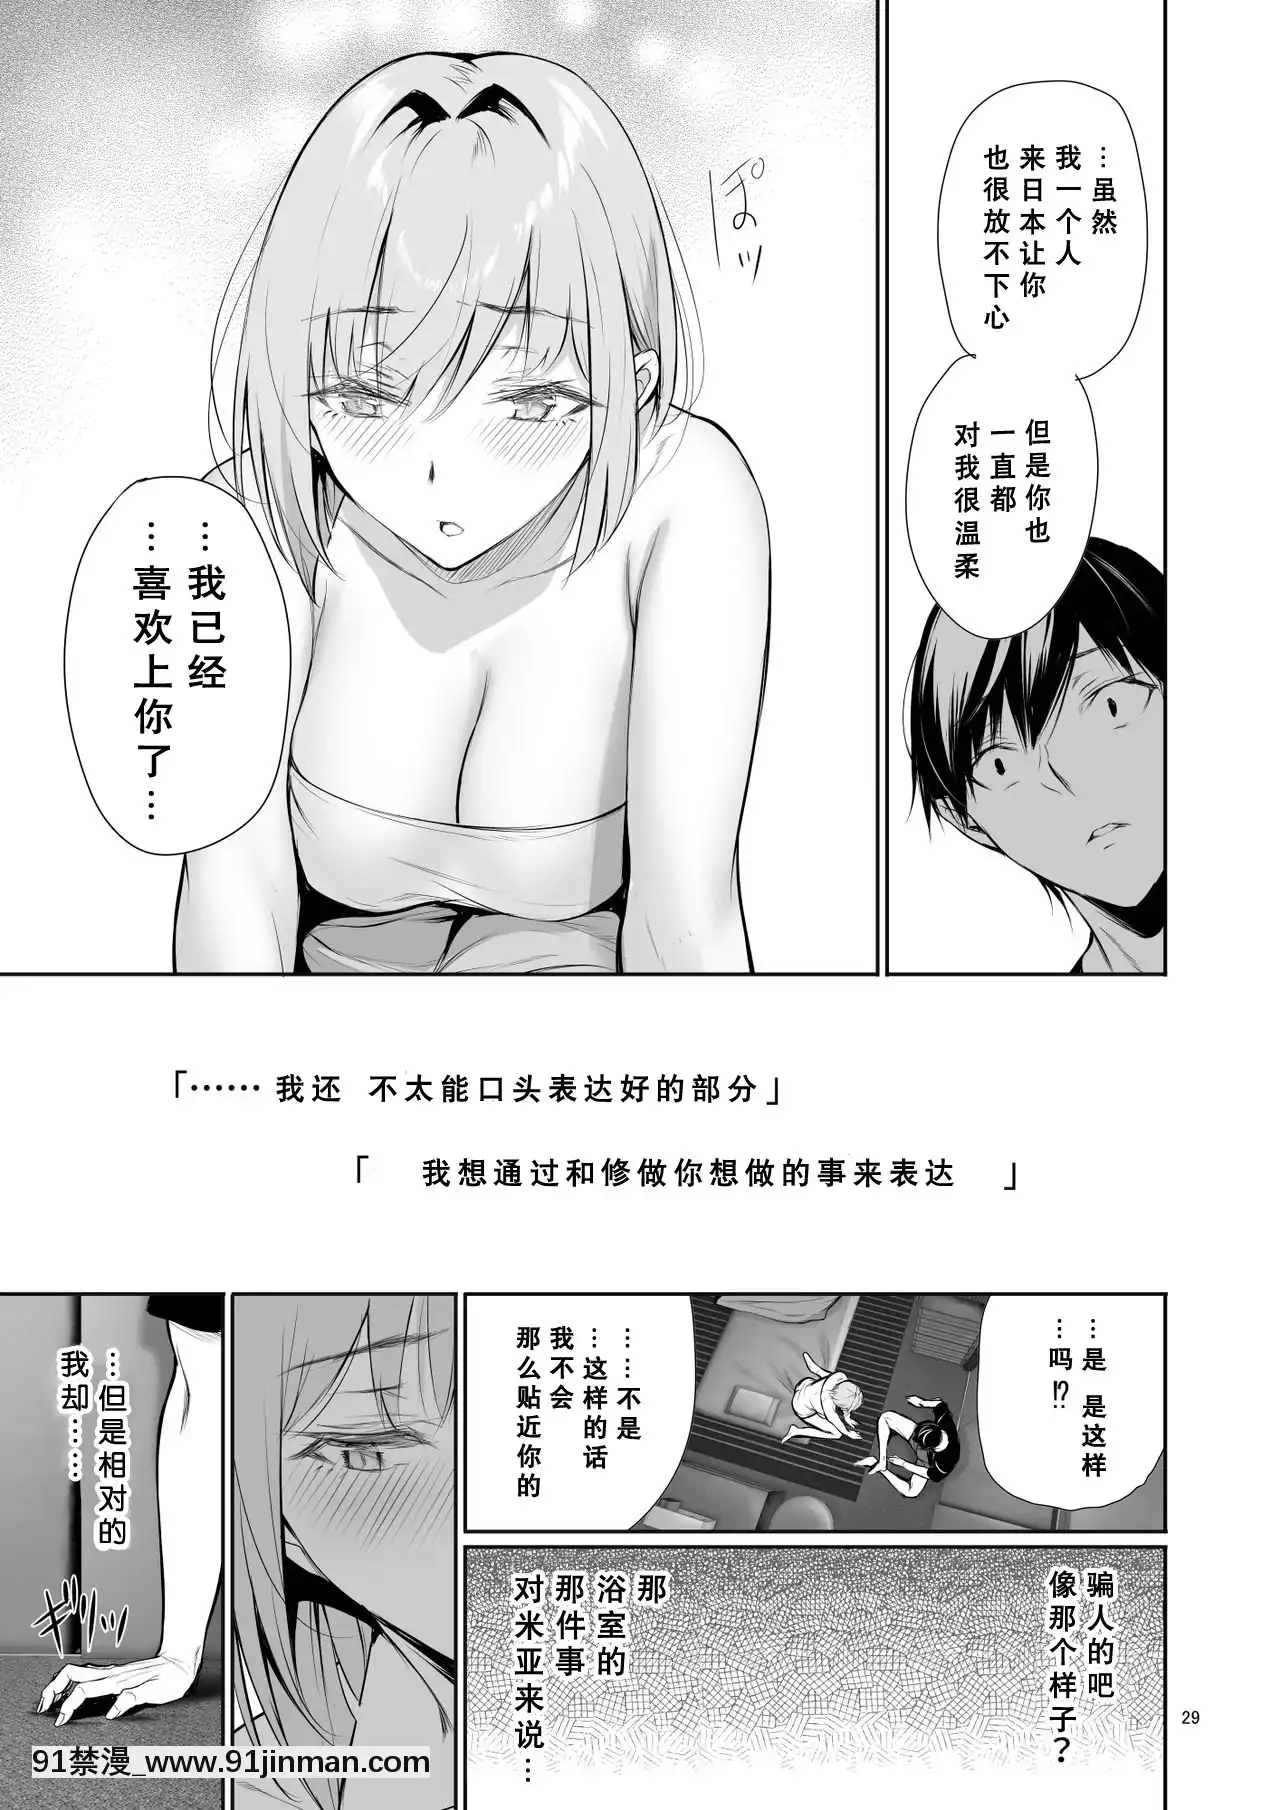 Lý do cho các cô gái Đức lên tàu để cùng nhau tắm (Dịch tiếng Trung)【truyện tranh chị em】